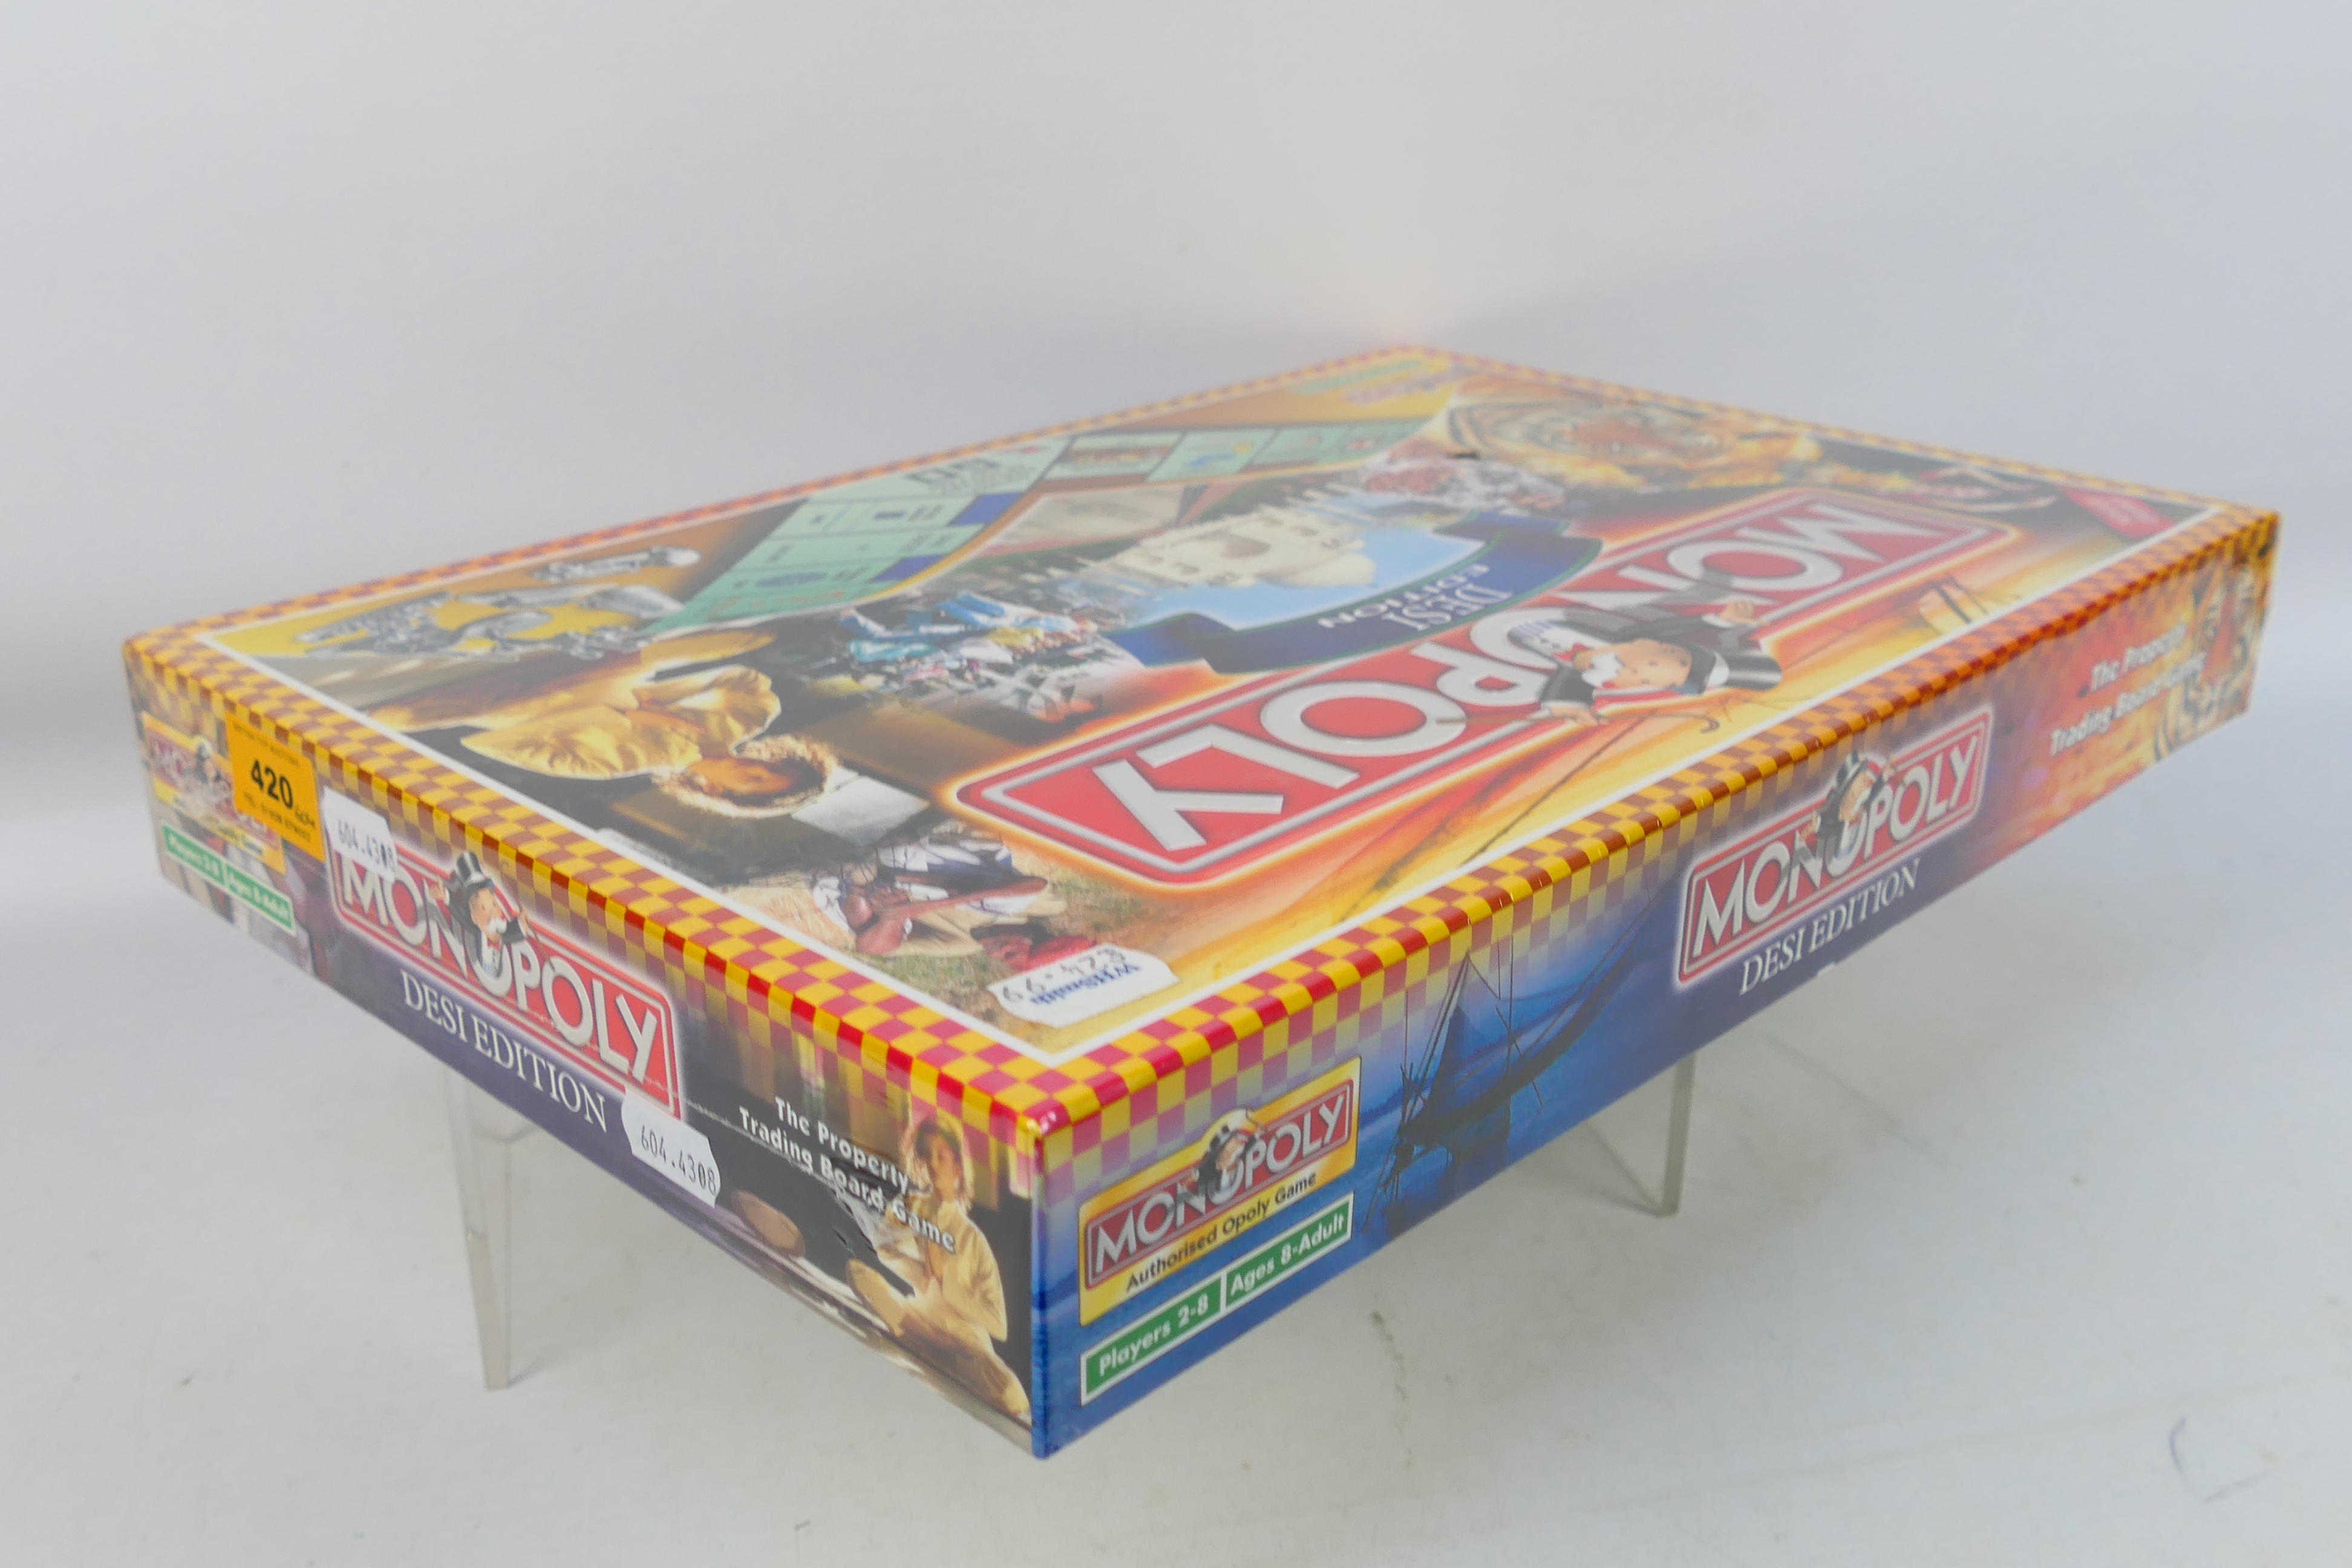 Hasbro - Monopoly - An unopened Desi Edi - Image 3 of 3